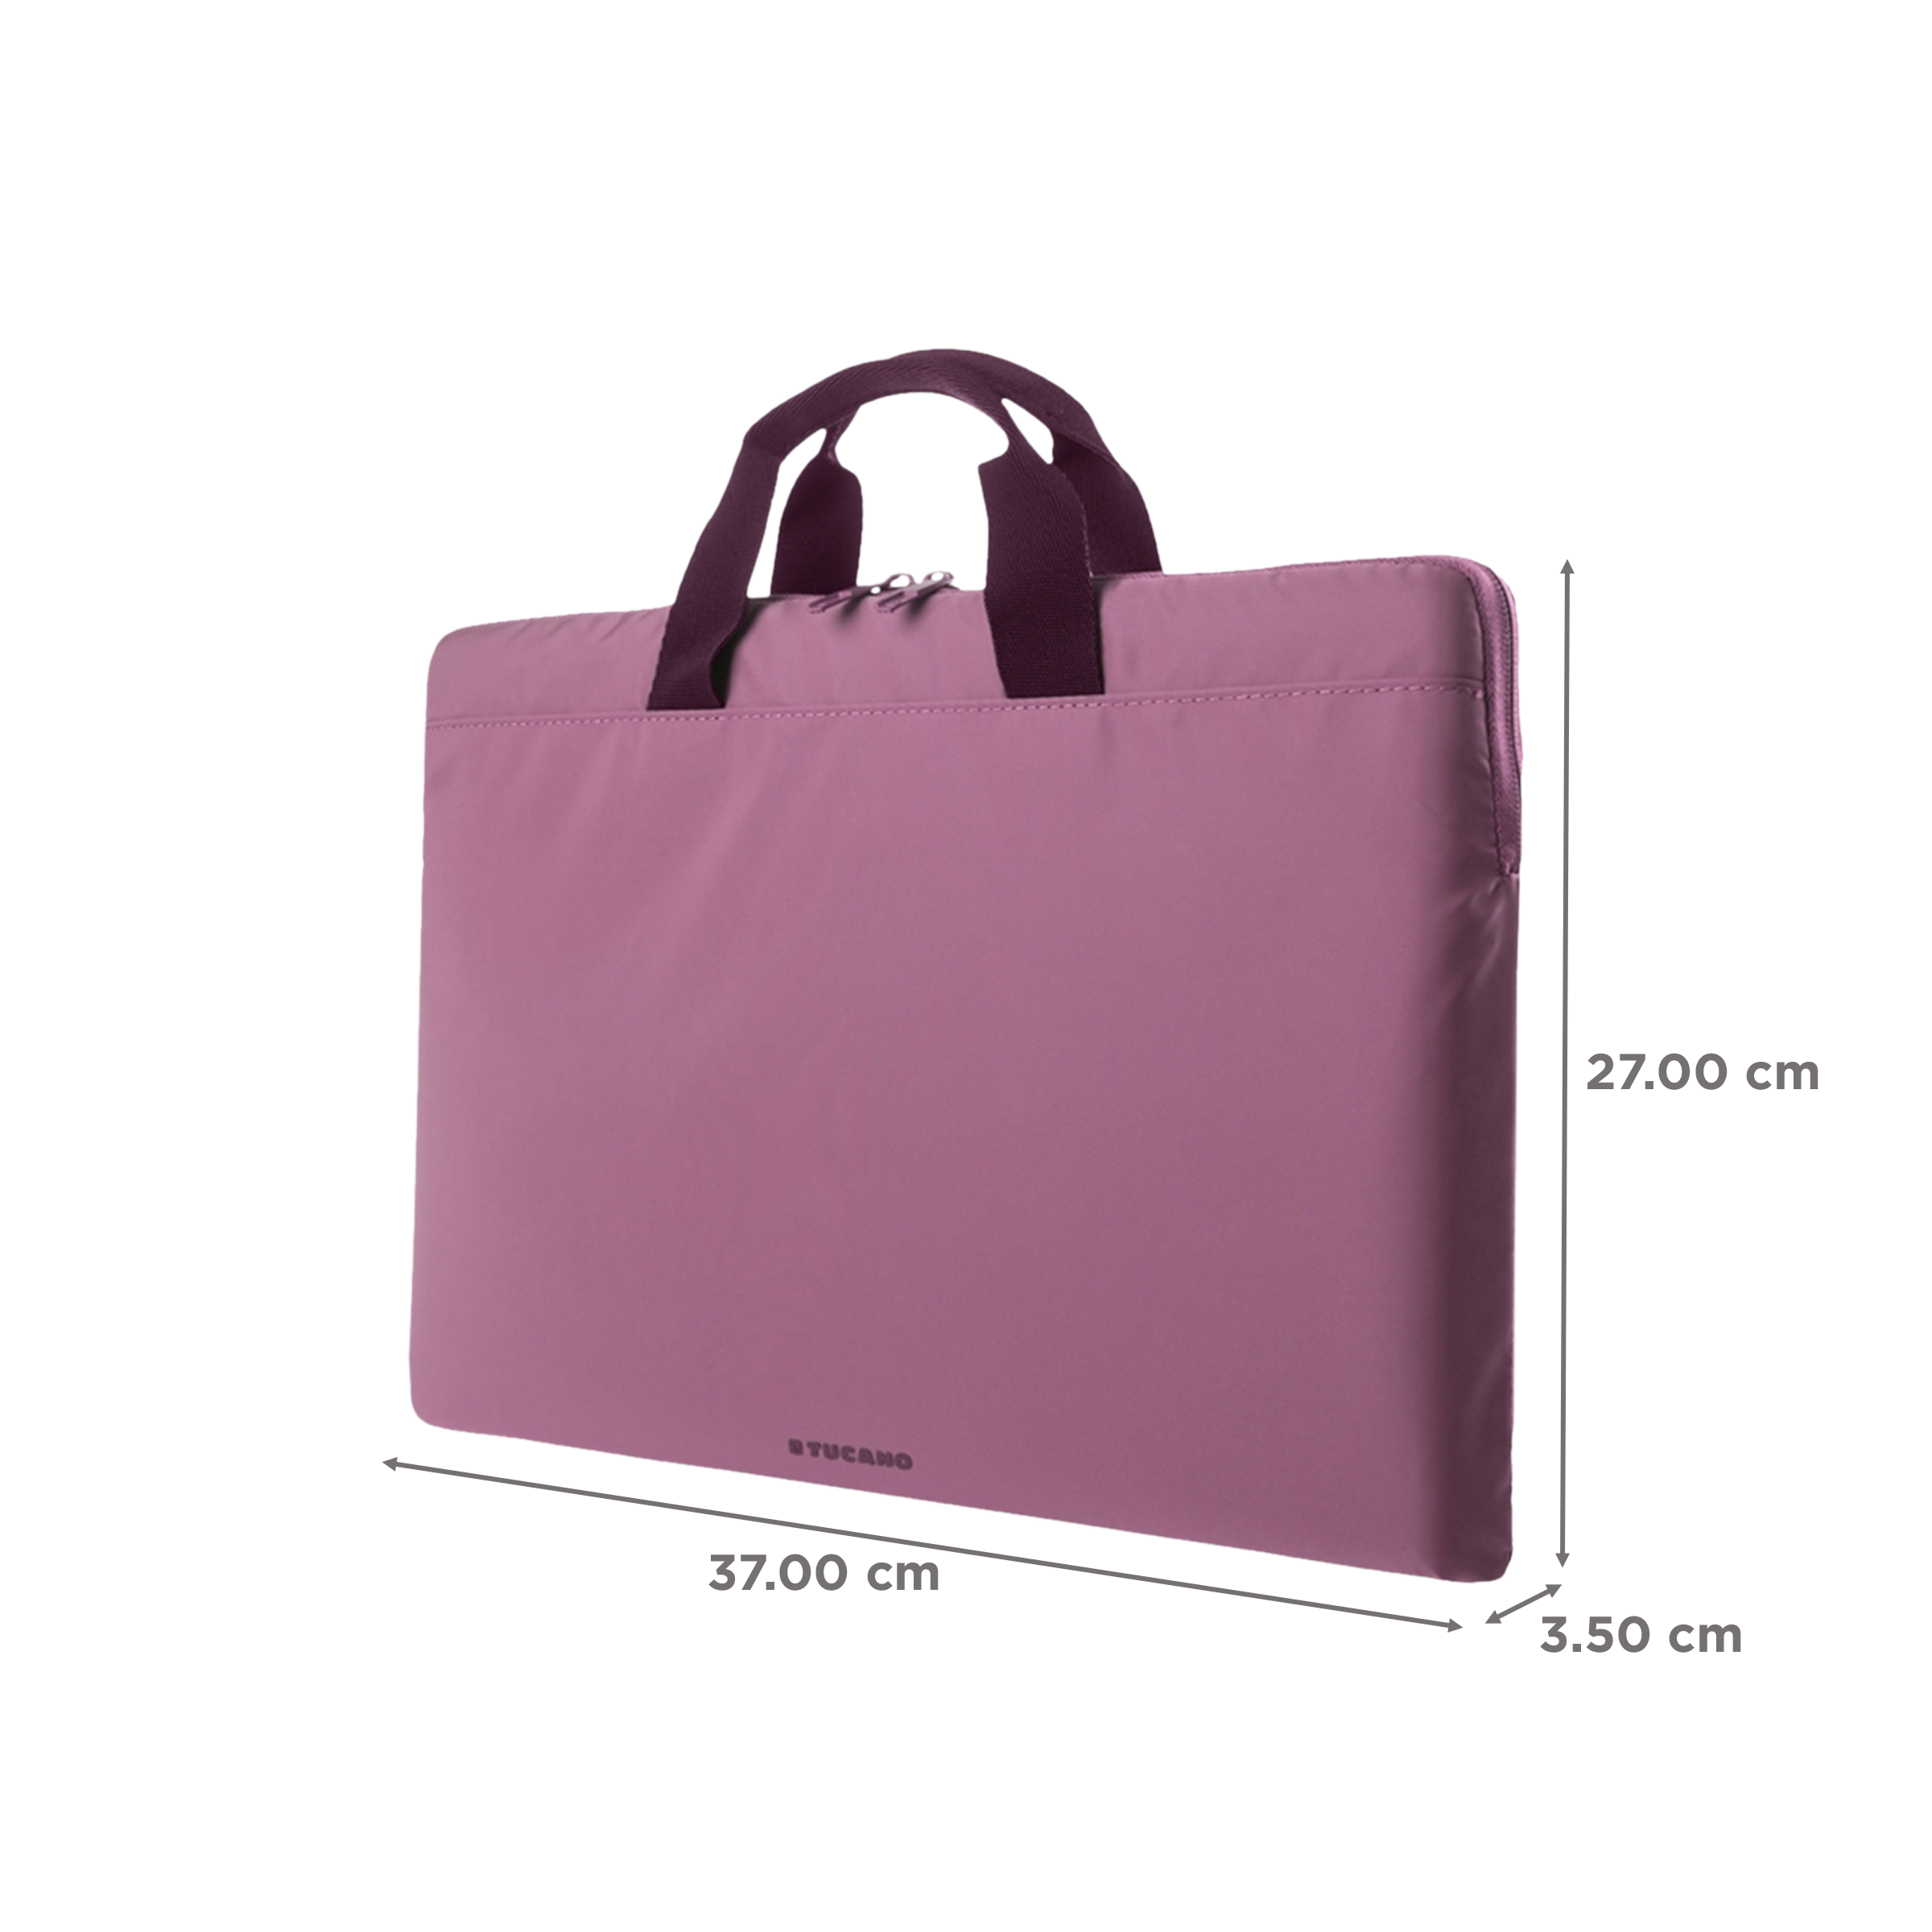 Laptop Bags, Cases, Sleeves & Lap Desks | staples.ca